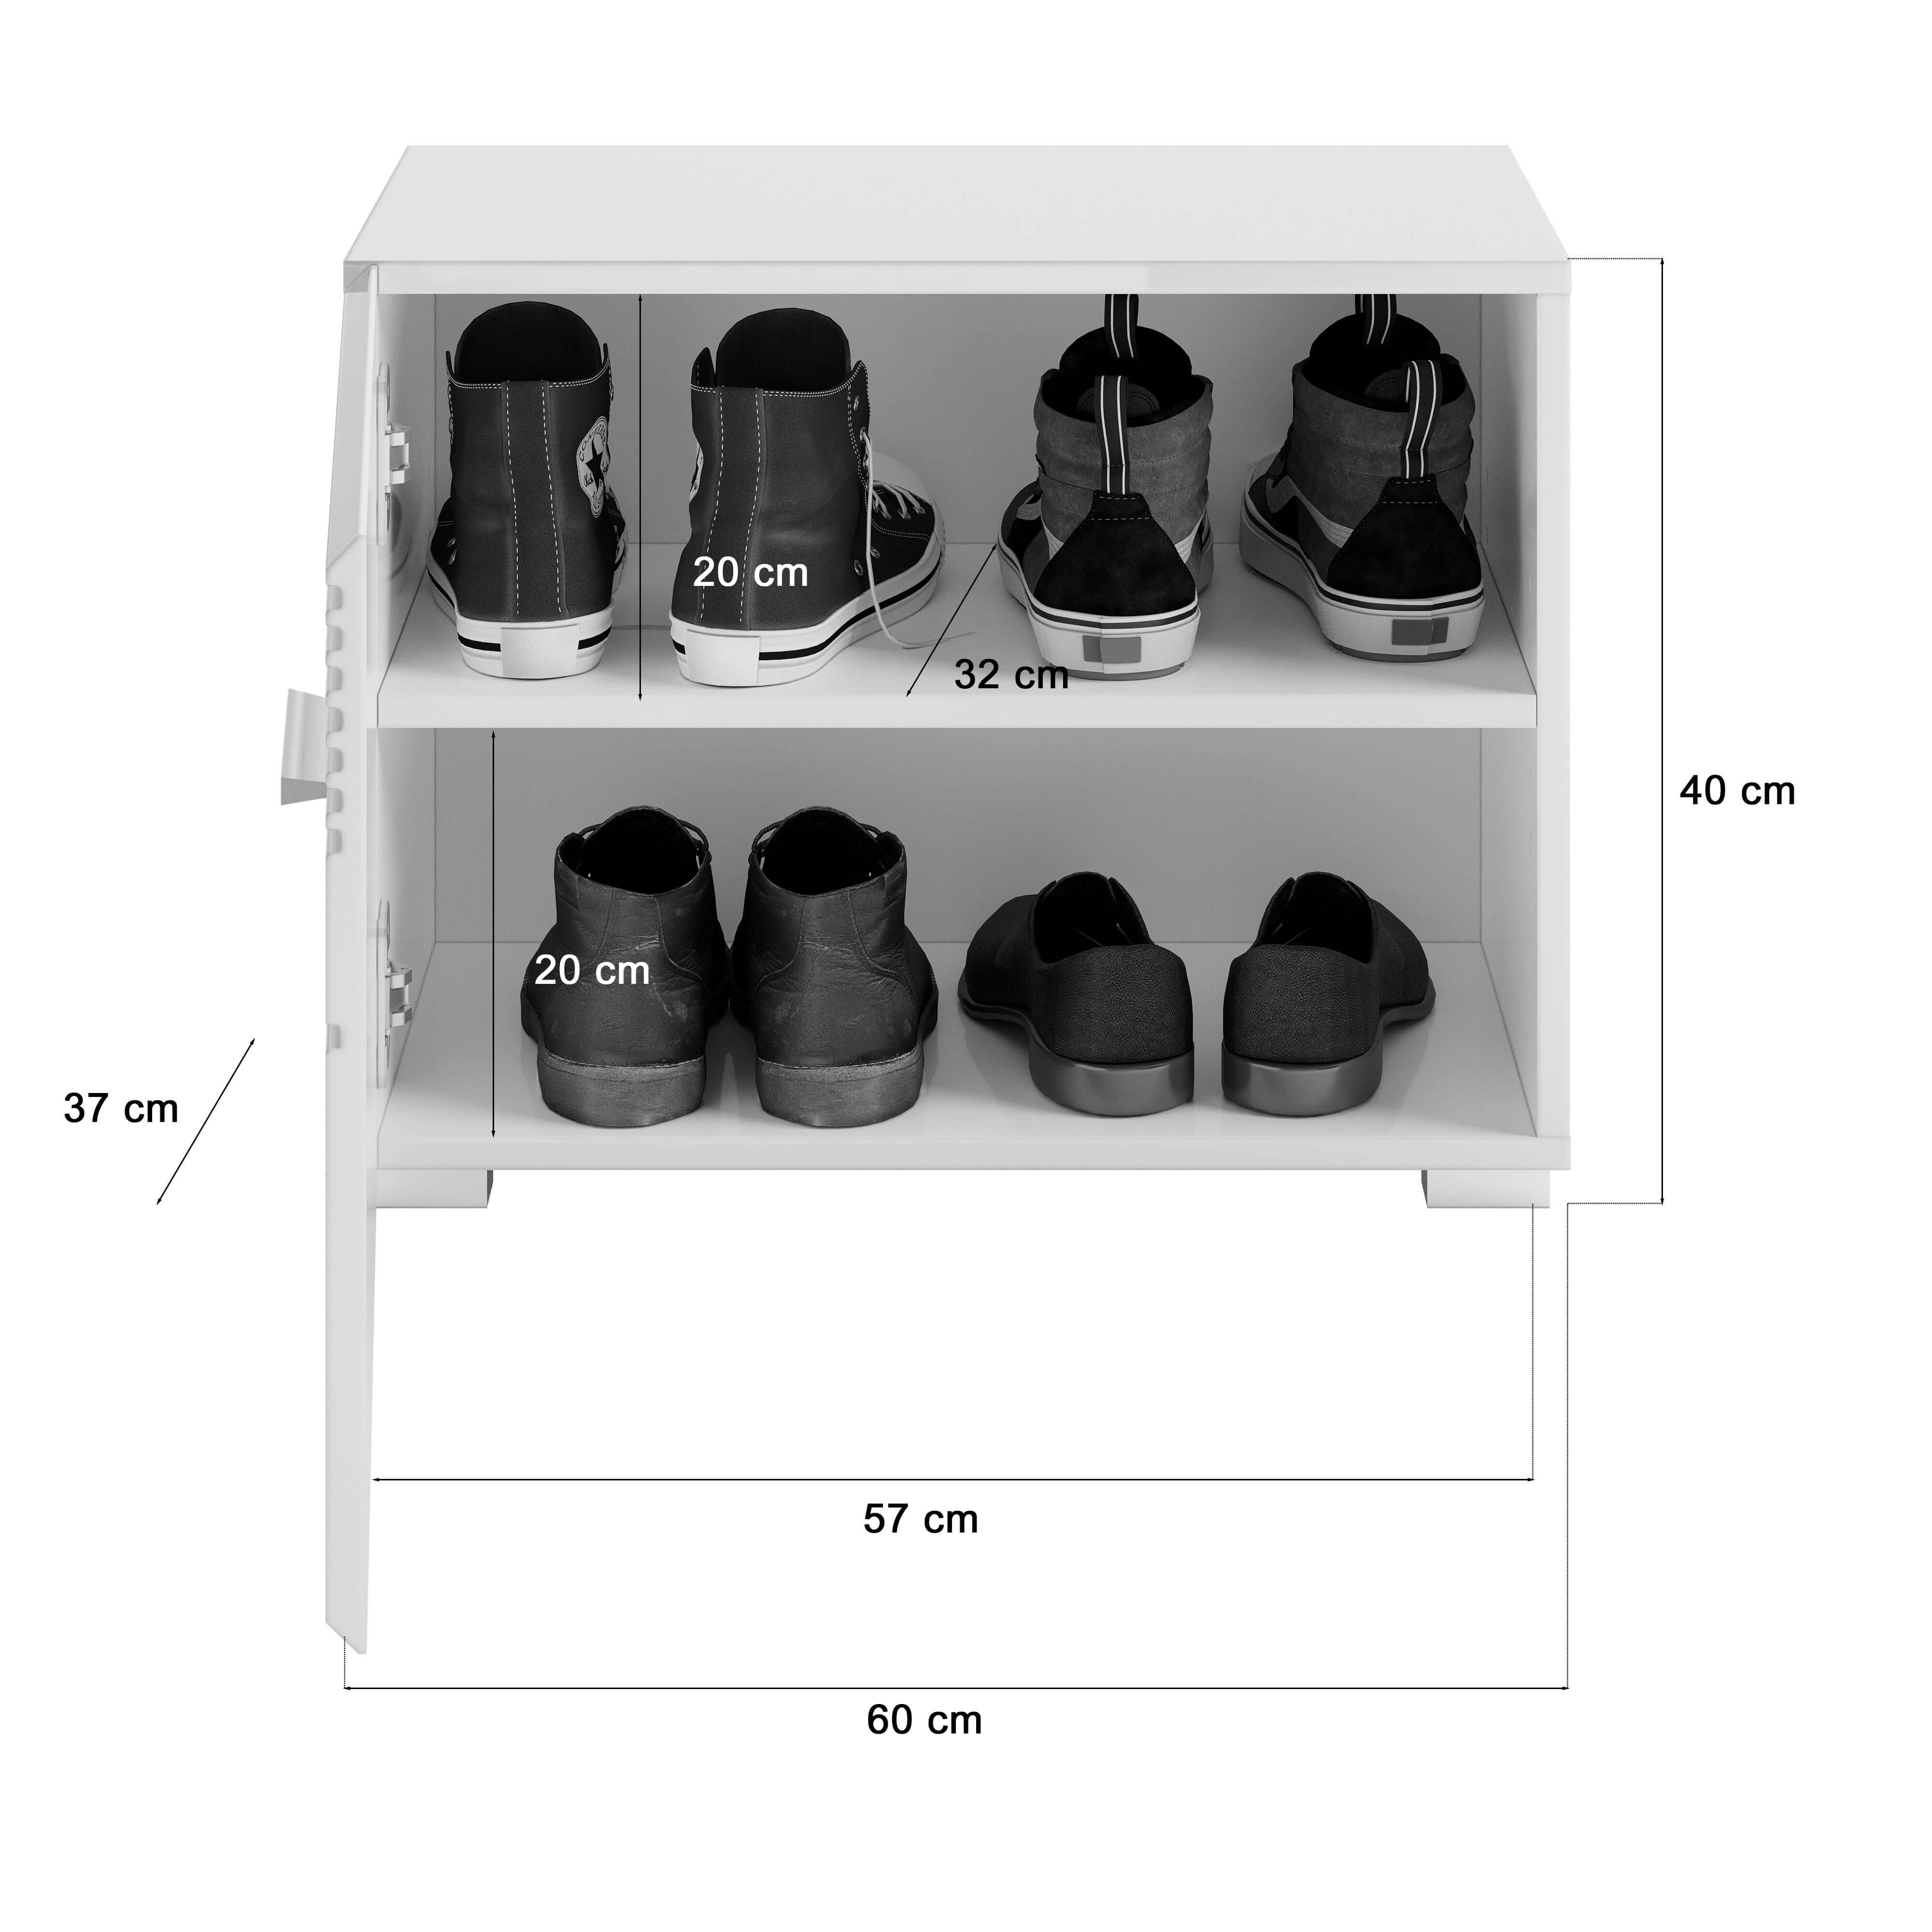 Garderobenkombination I Modell TK7 I Design: Hochglanzfronten mit vertikaler Rillen-Akzentuierung